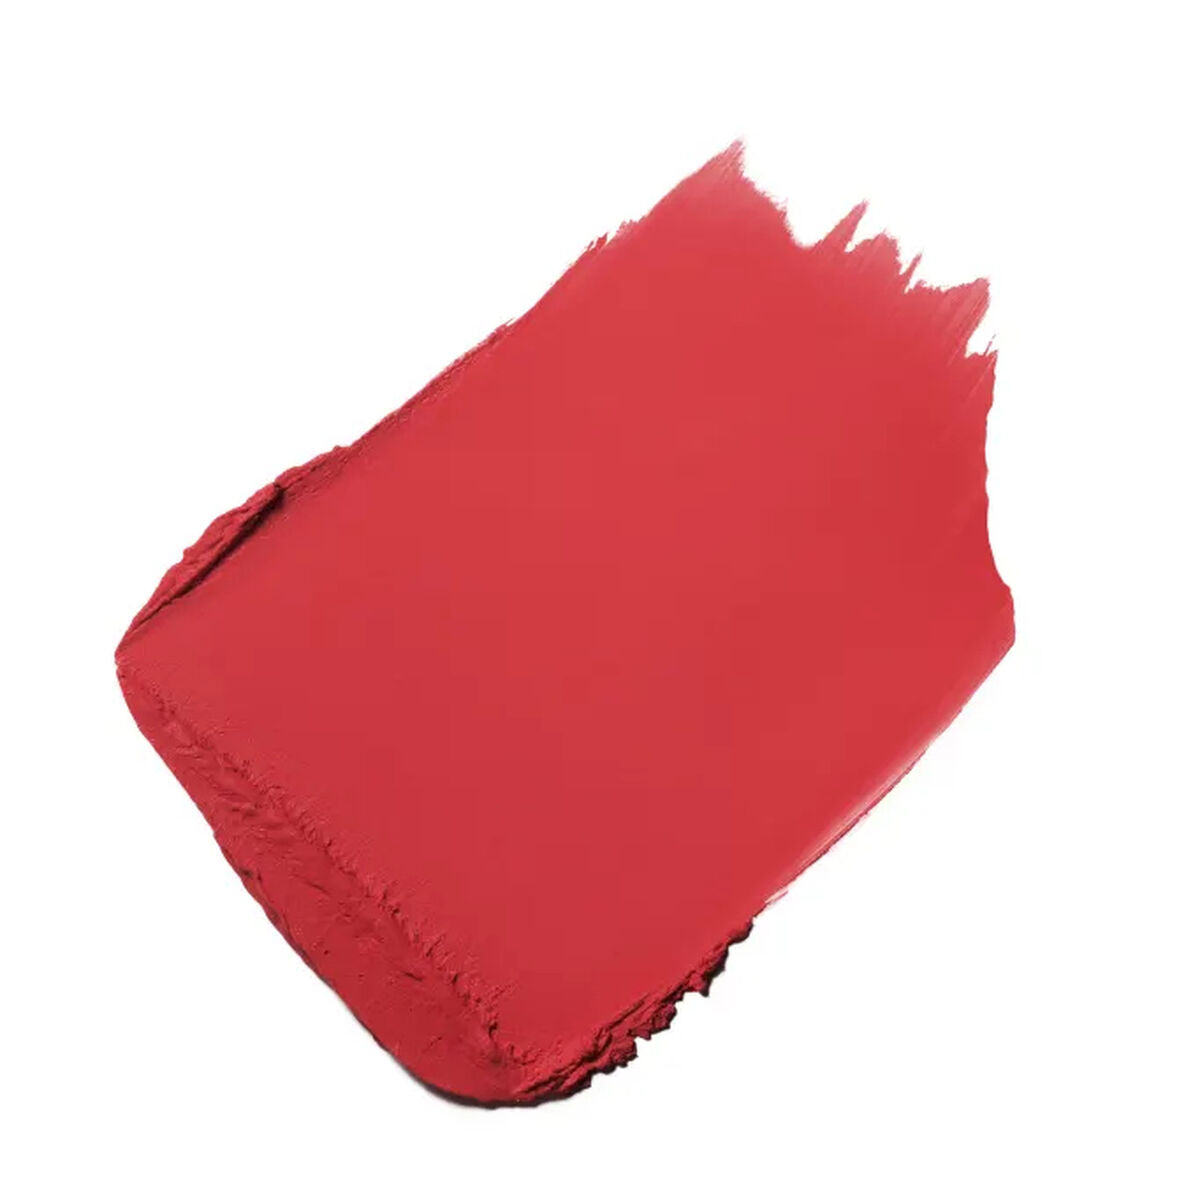 Lippenbalsam Chanel Rouge Allure Velvet Nº 02:00 3,5 g